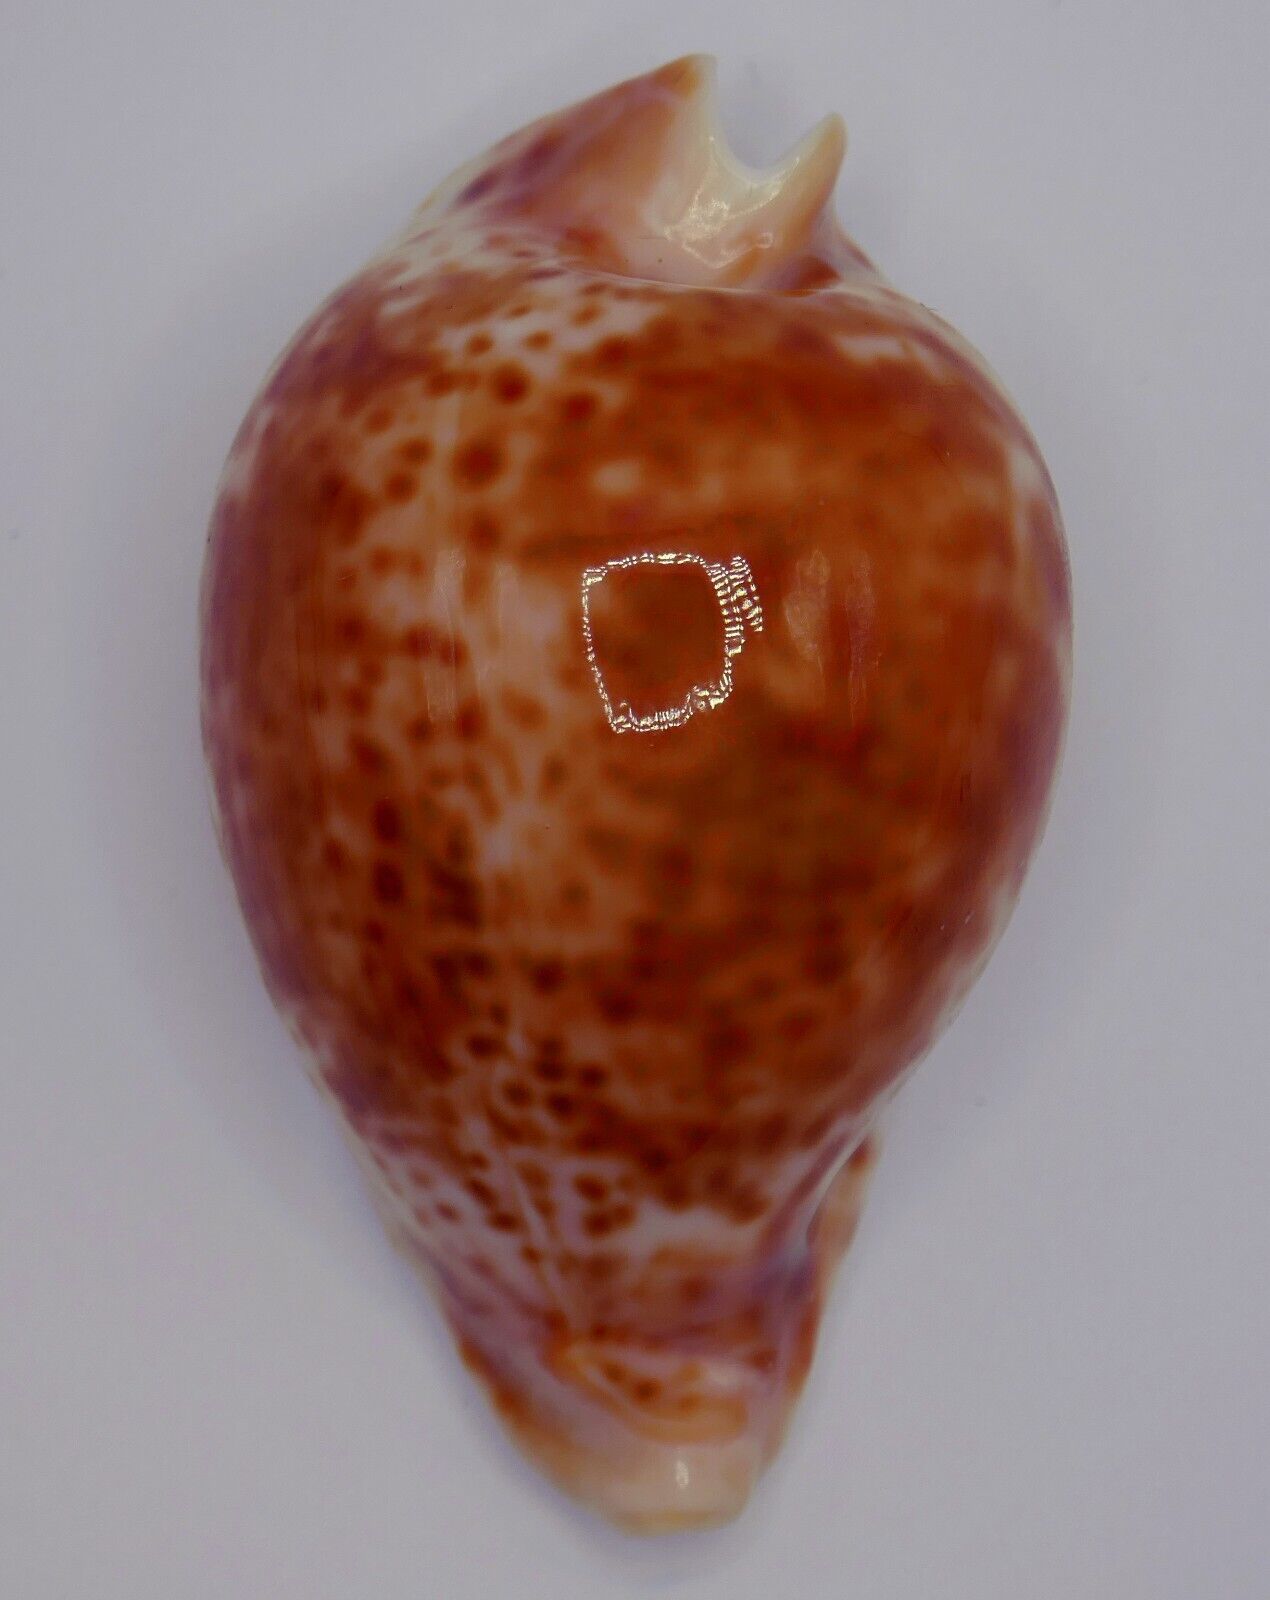 ULTRA Cypraea (Umbilia) hesitata beddomei GOLDEN-ORANGE 66.1mm Sydney, Aust.